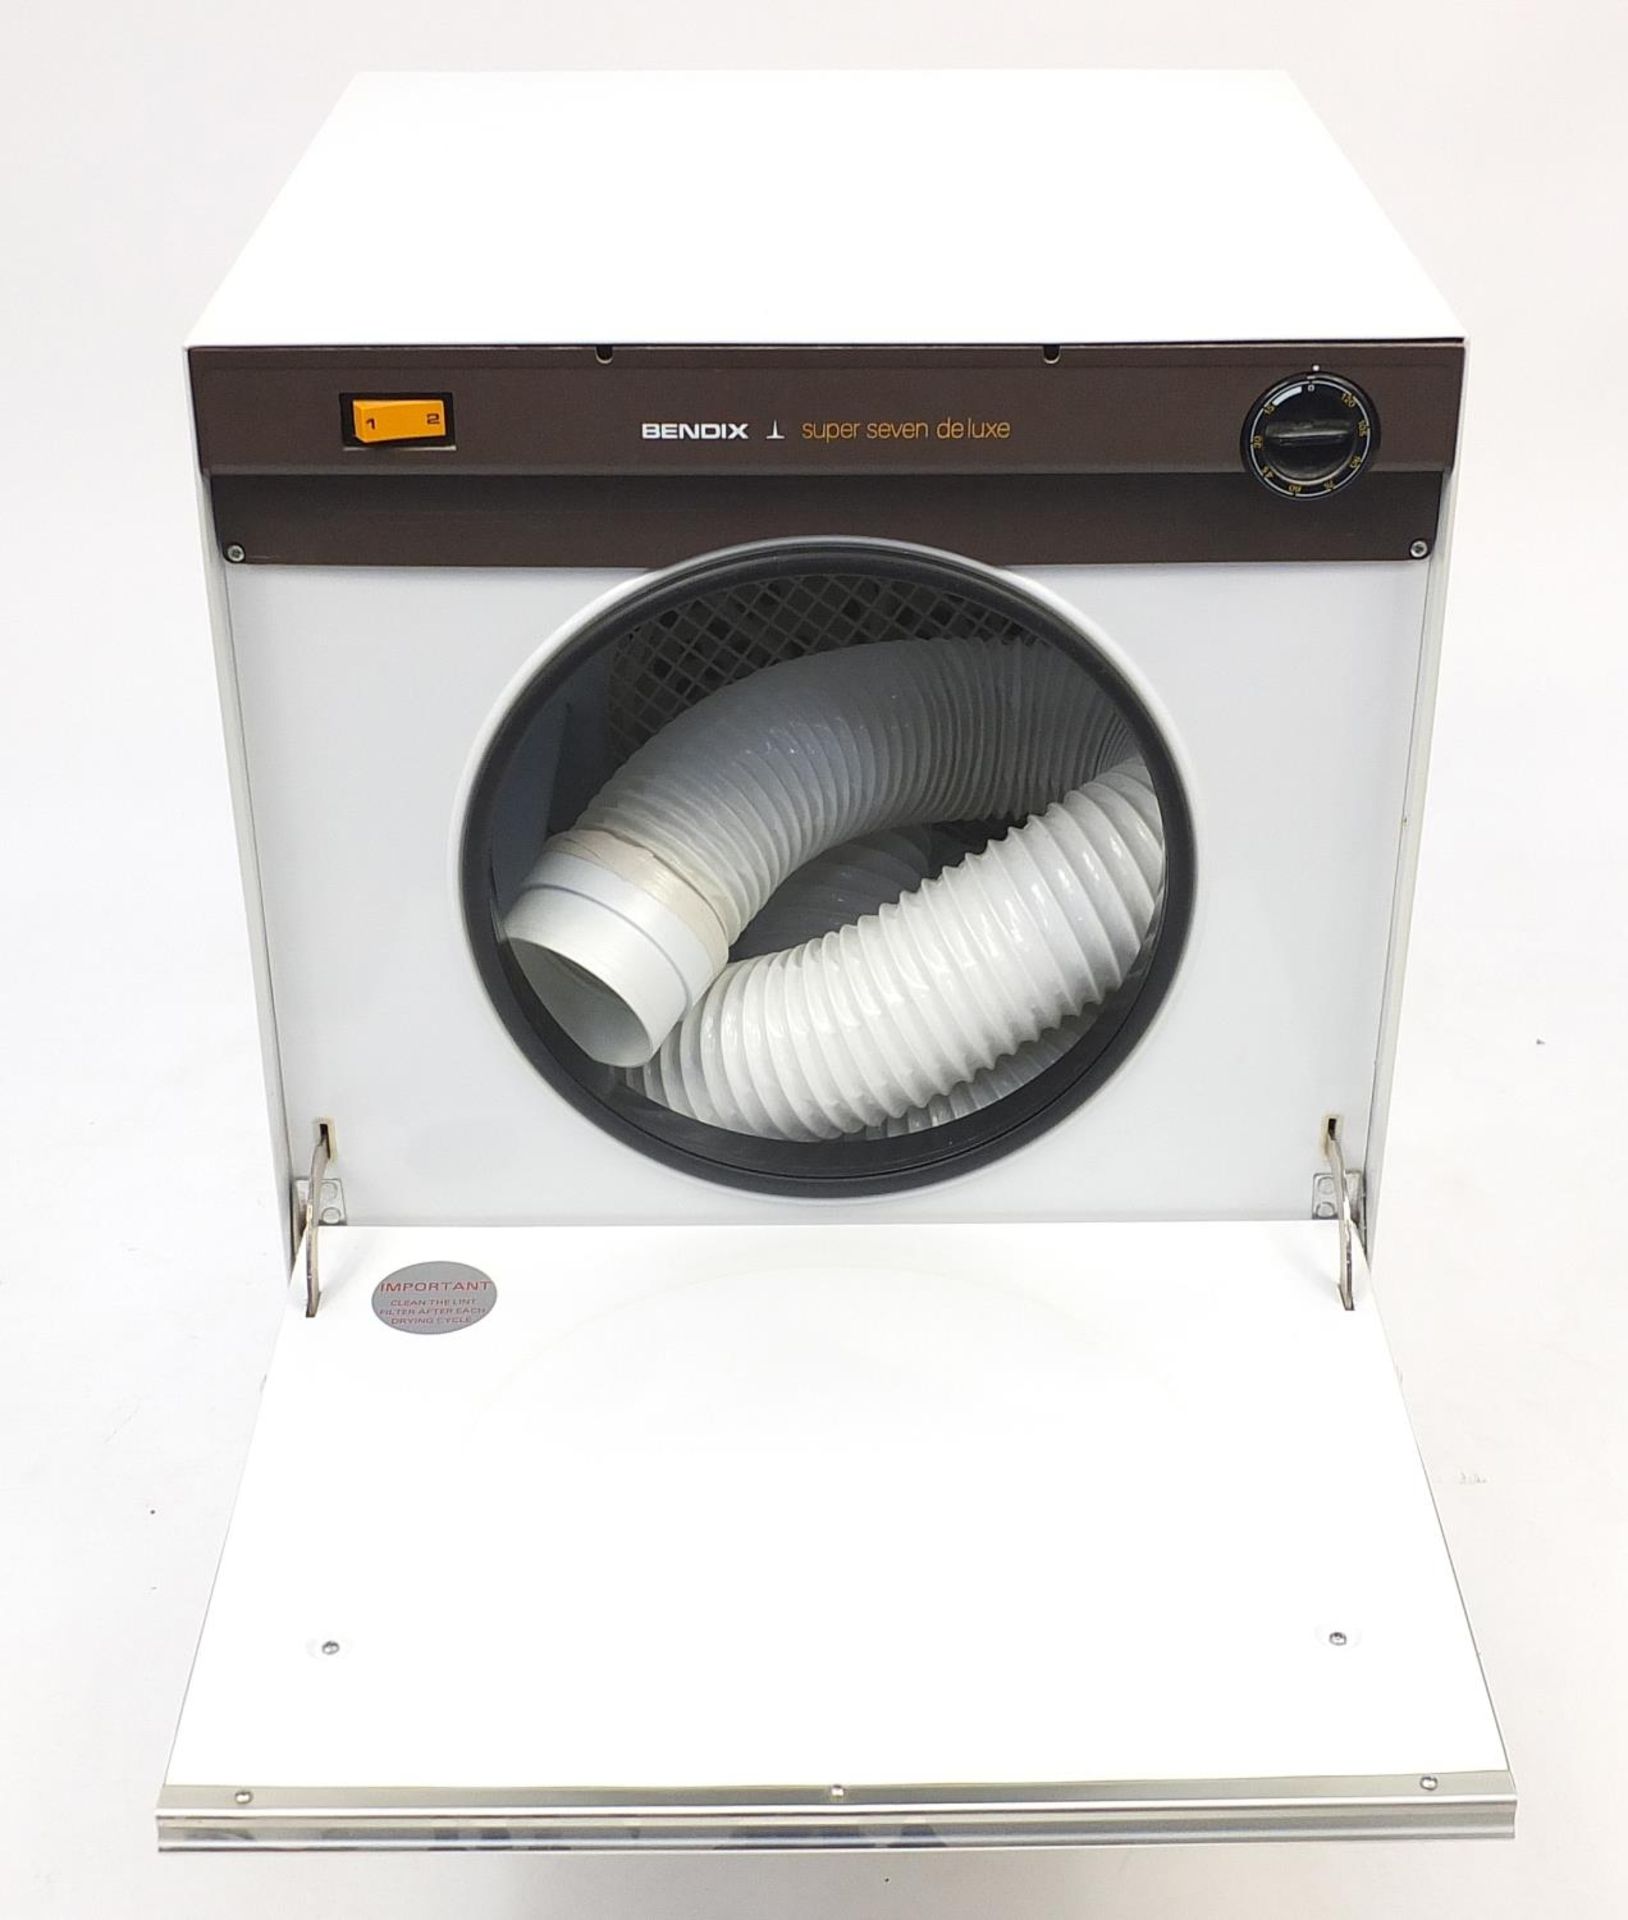 Bendix Super 7 Deluxe tumble dryer, 57cm H x 49cm W x 48cm D : For Further Condition Reports - Bild 3 aus 5